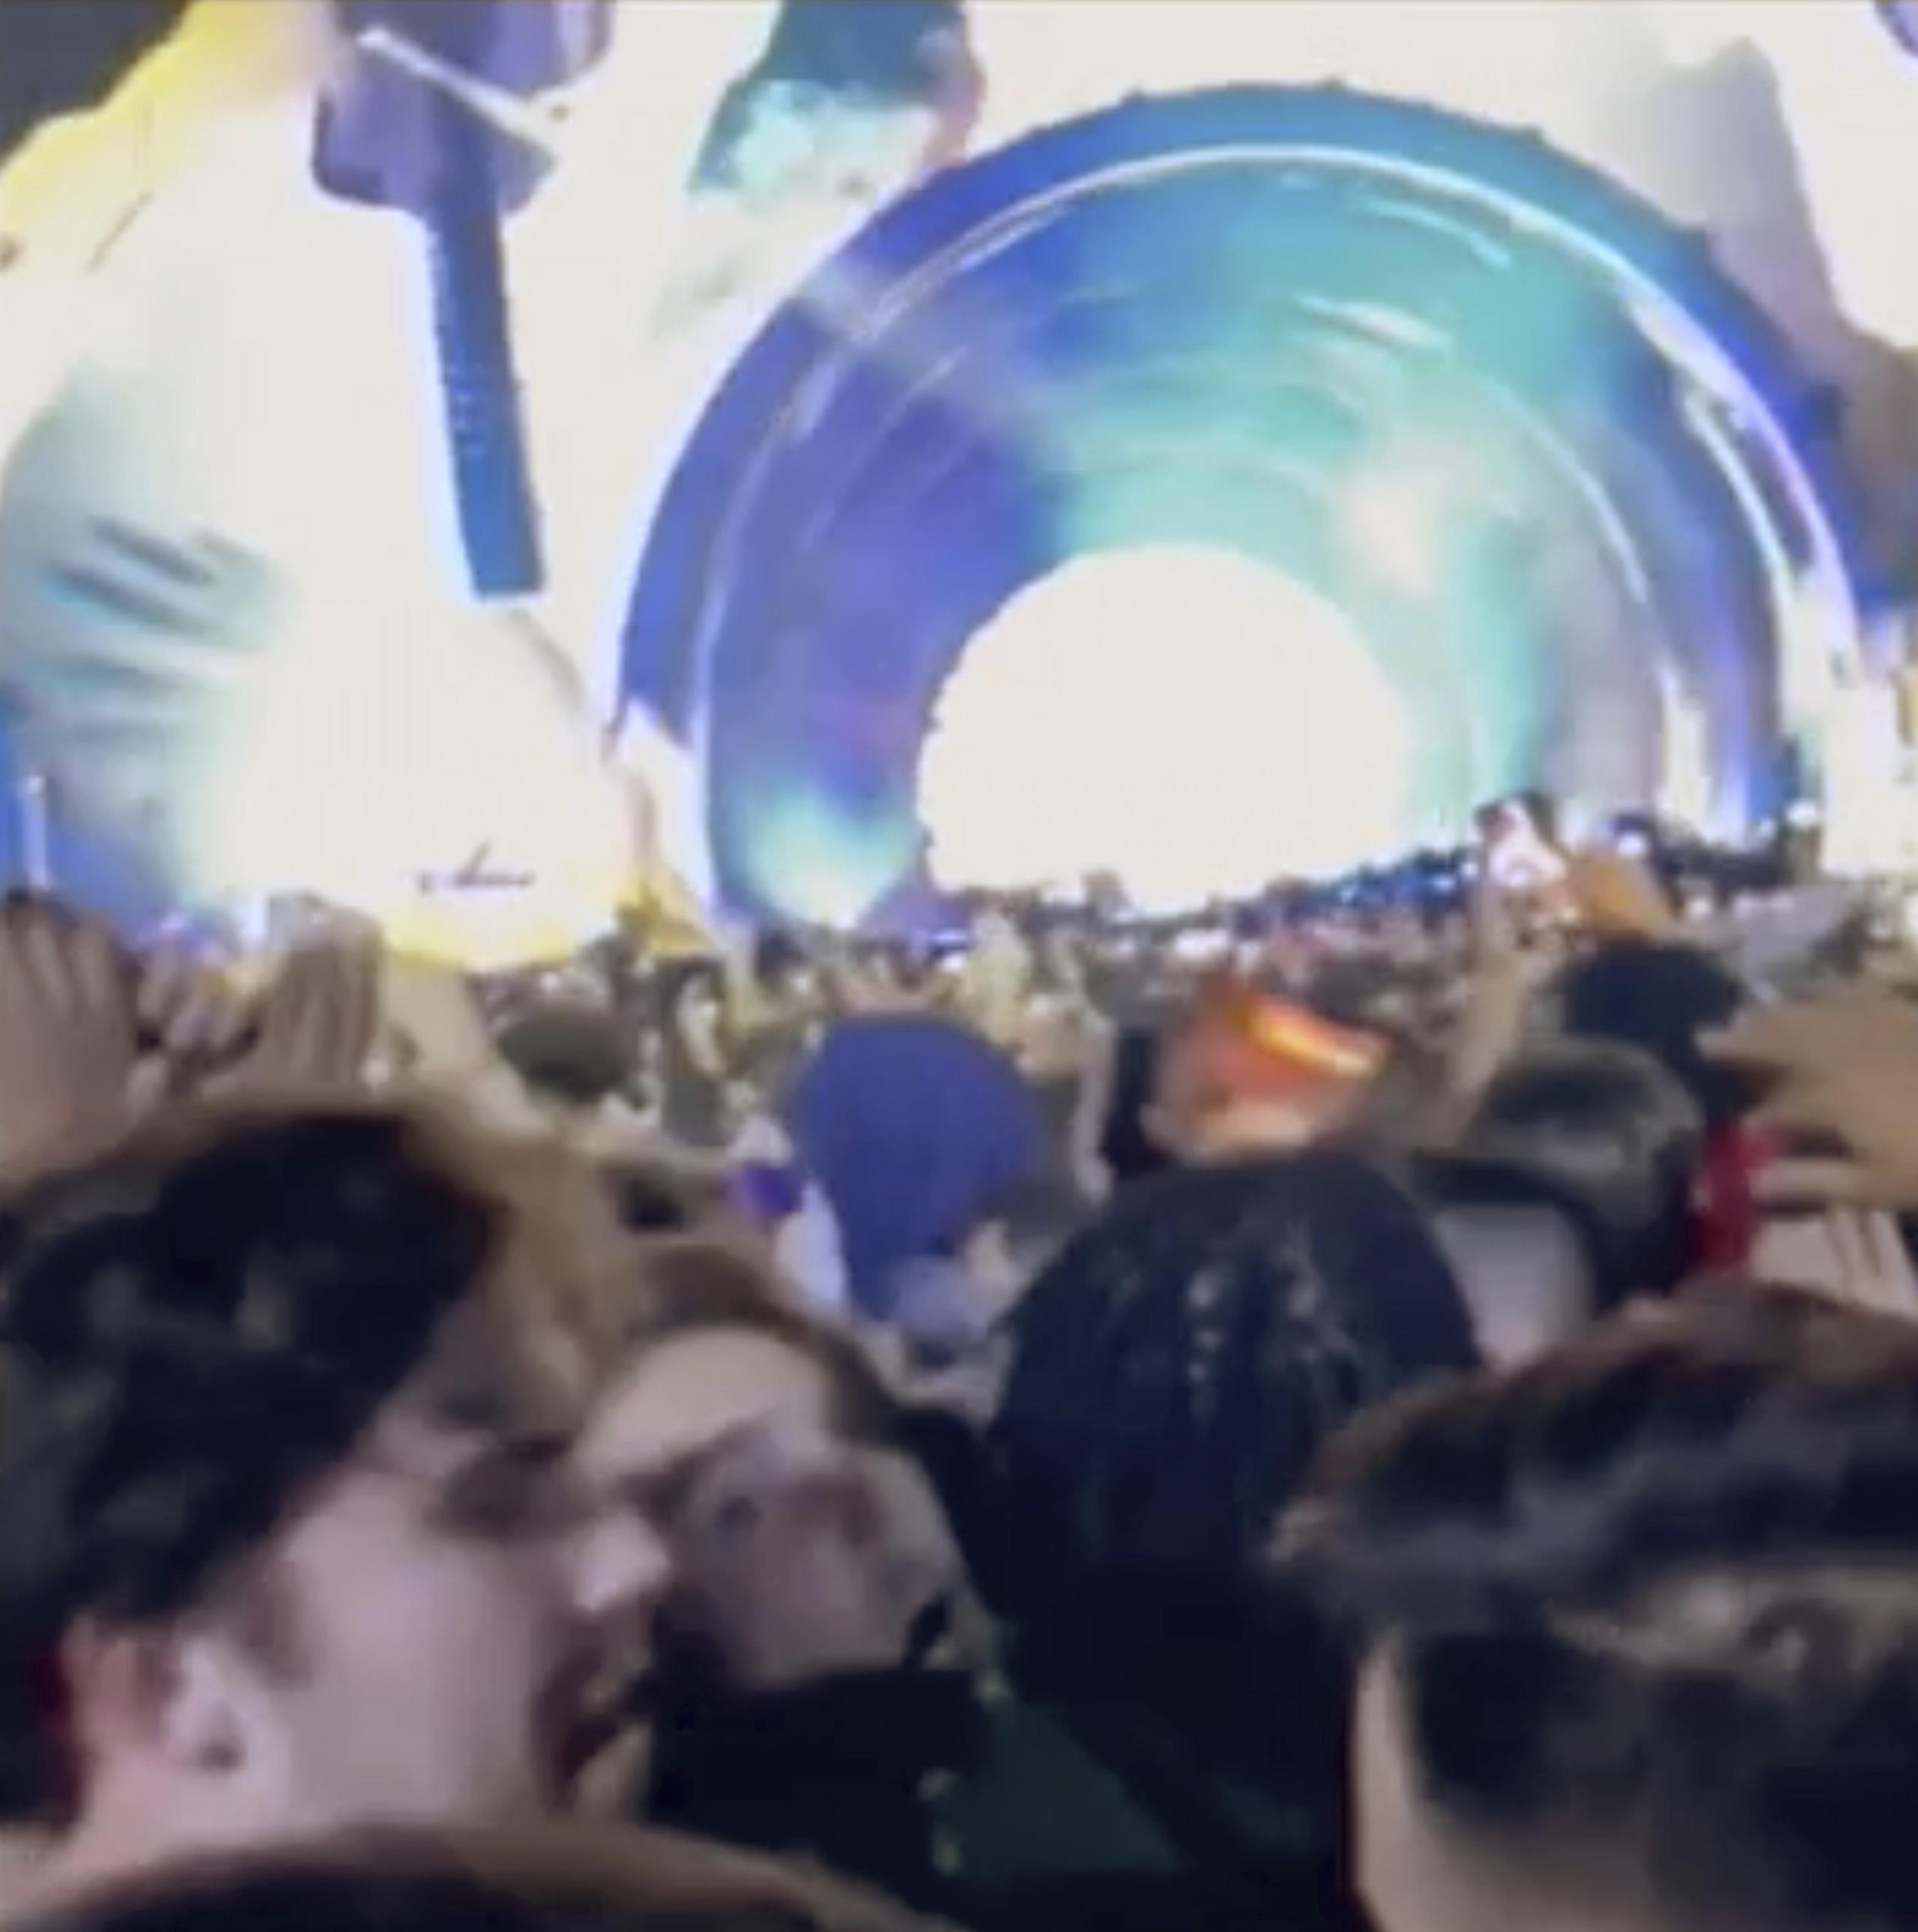 Imagen tomada de un video del celular de uno de los asistentes al festival que capta el momento en que personas de la multitud gritan a otras a echarse hacia atrás.